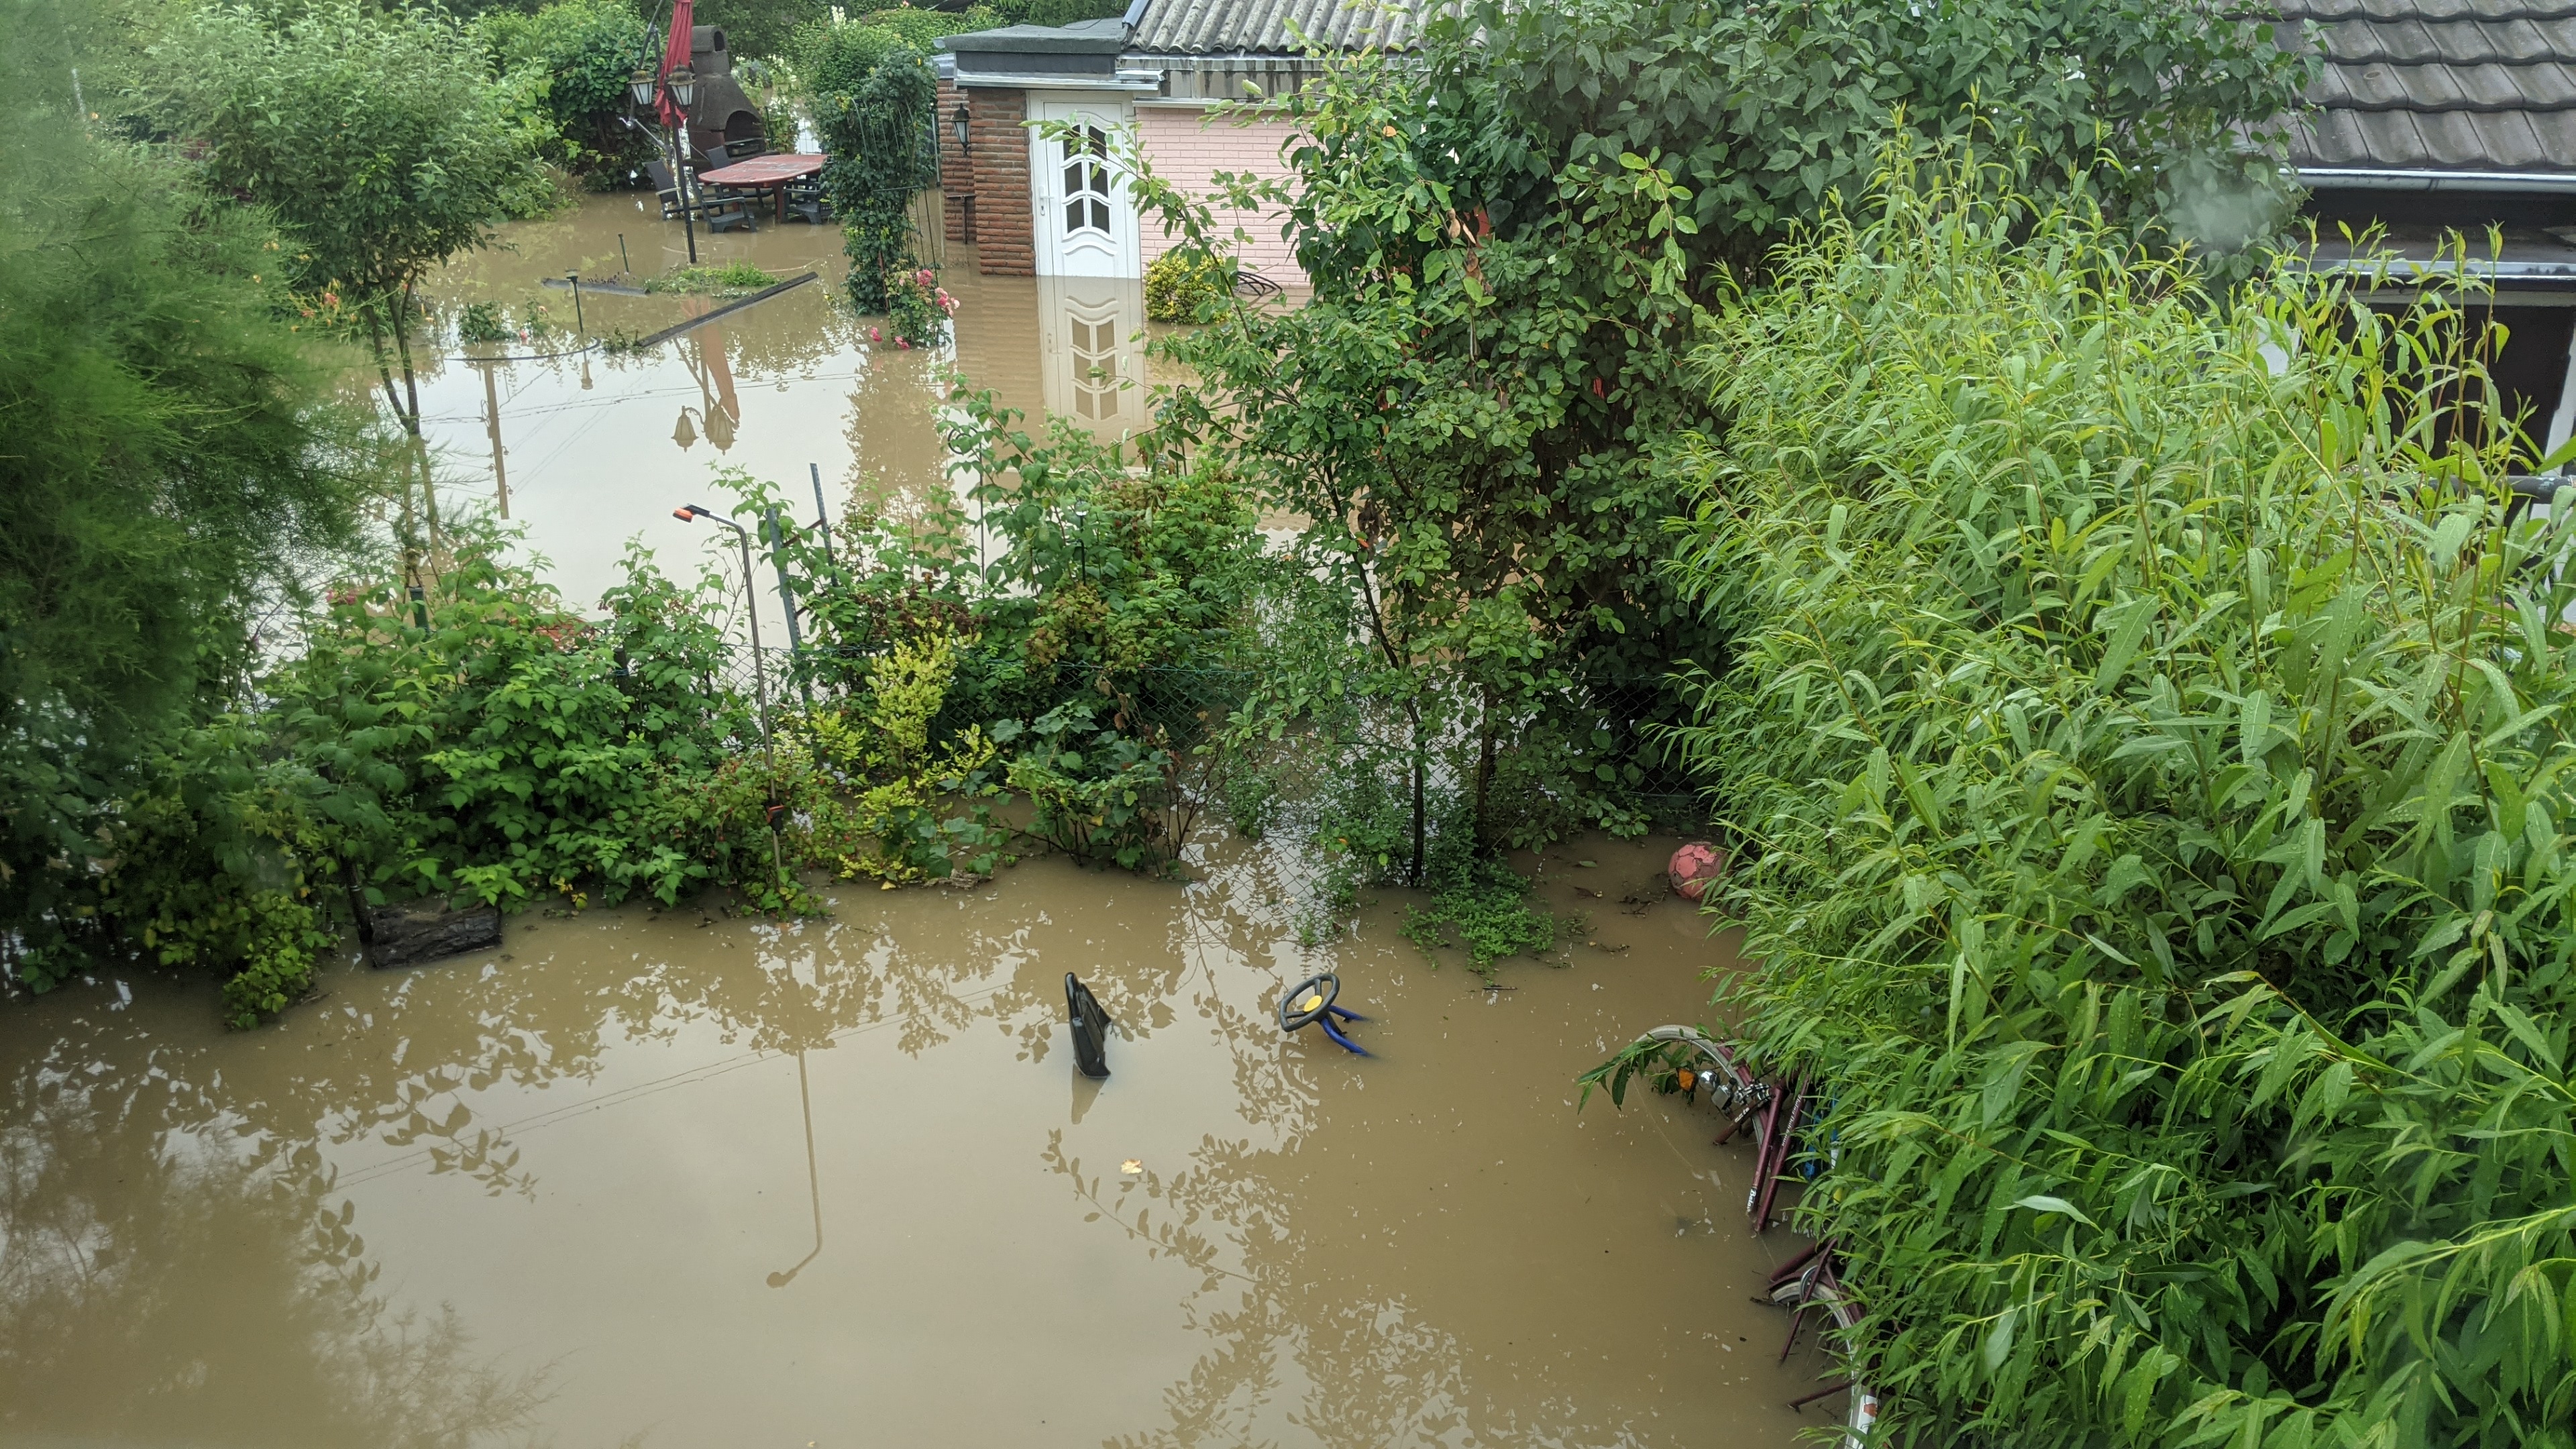 Hochwasser-Katastrophe vom Juli 2021, Königsbusch /Foto © Arthur H.C. Scholz